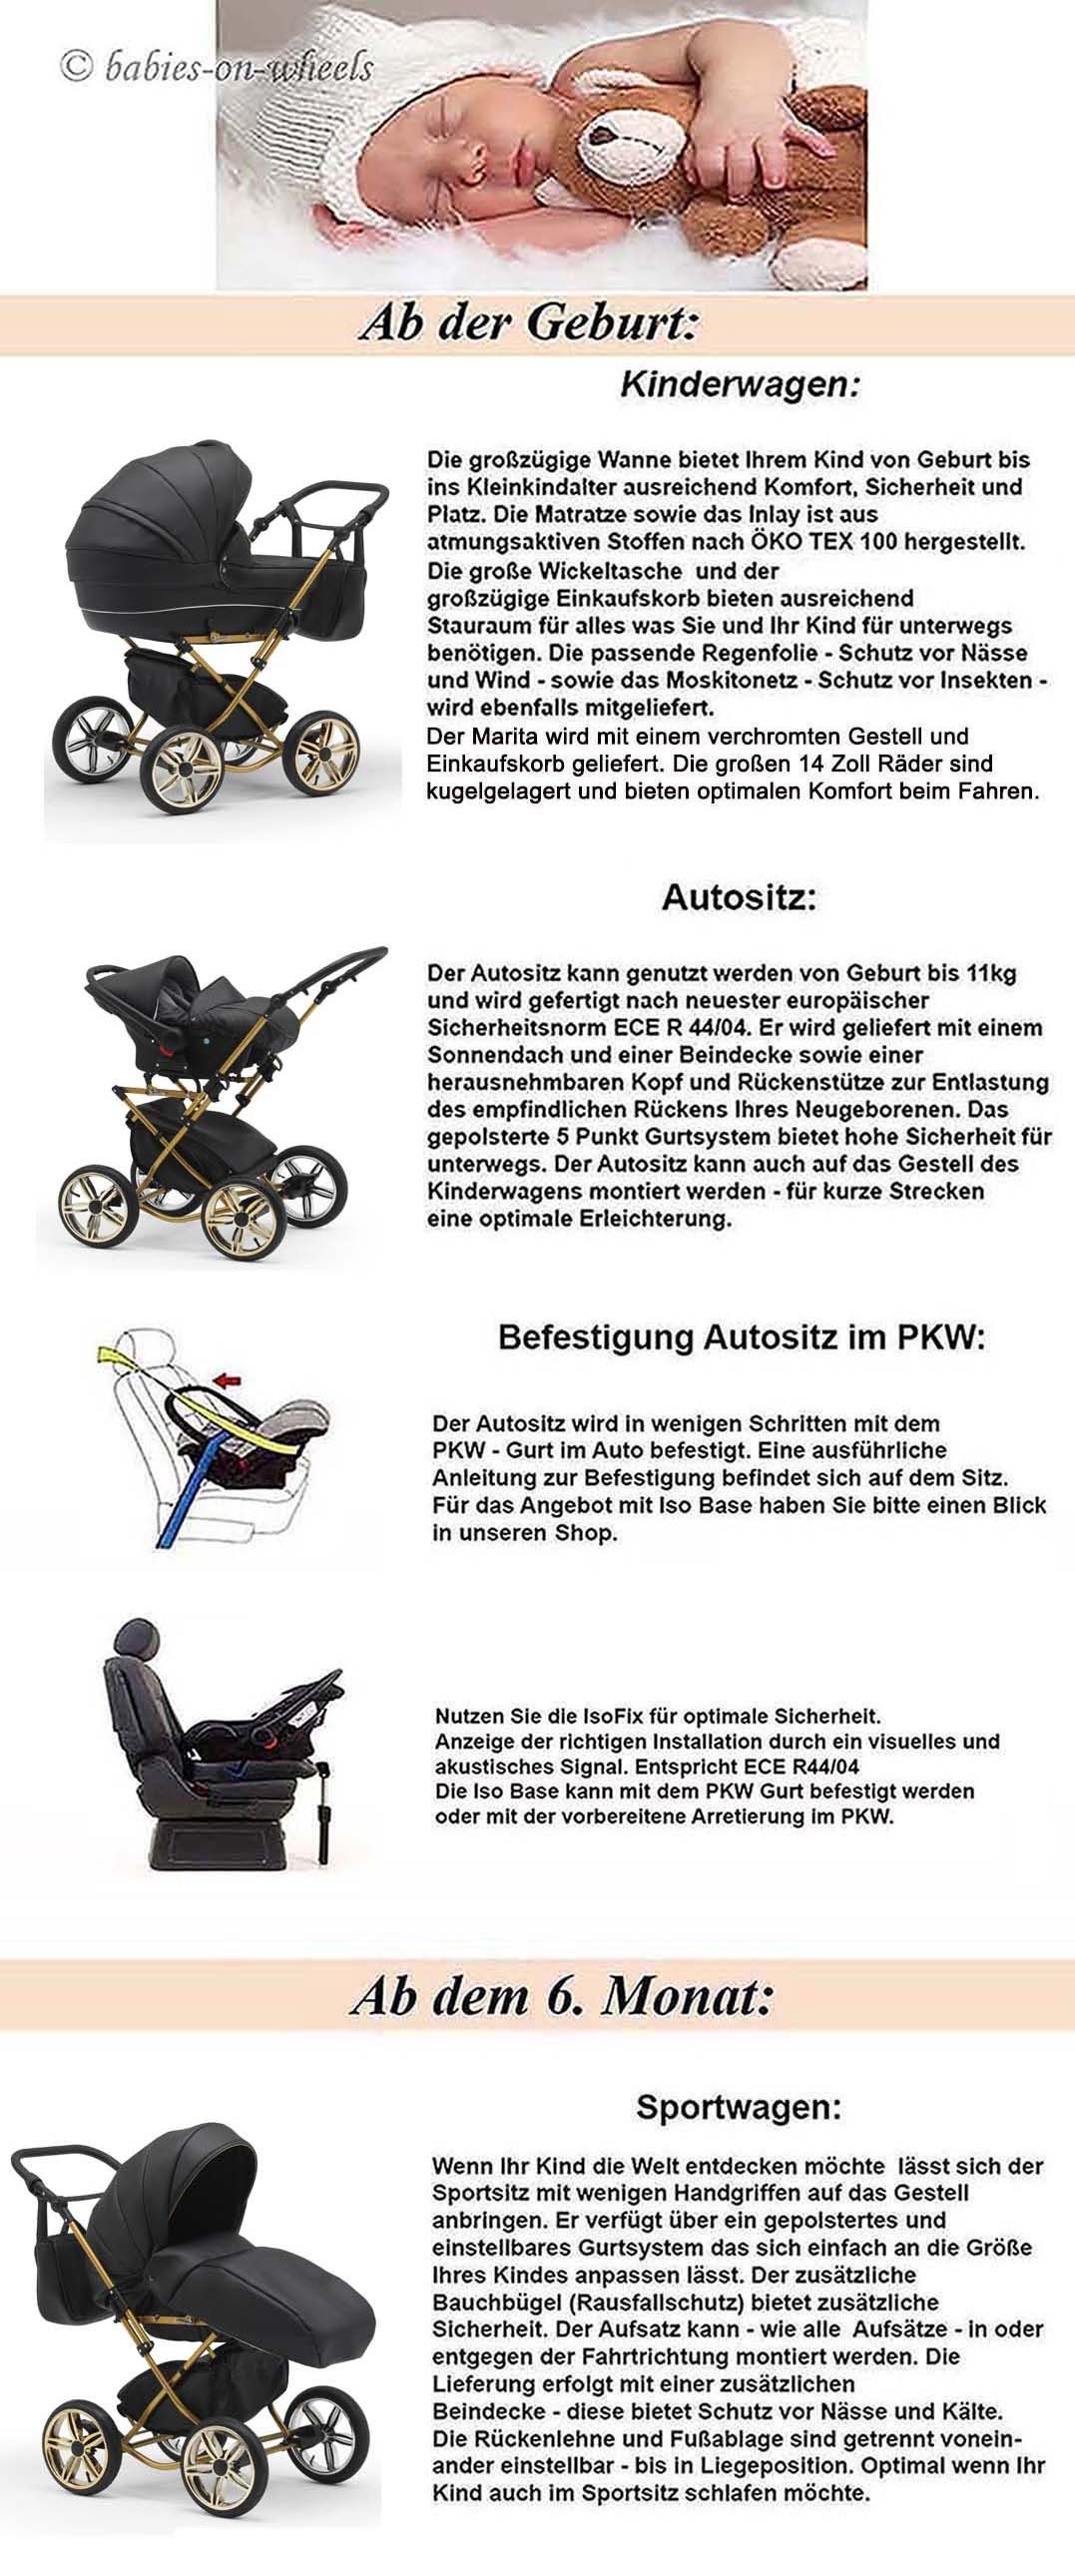 14 Sorento - 10 und in Kombi-Kinderwagen Schwarz Autositz inkl. Designs - 1 Teile Base Iso in babies-on-wheels 4